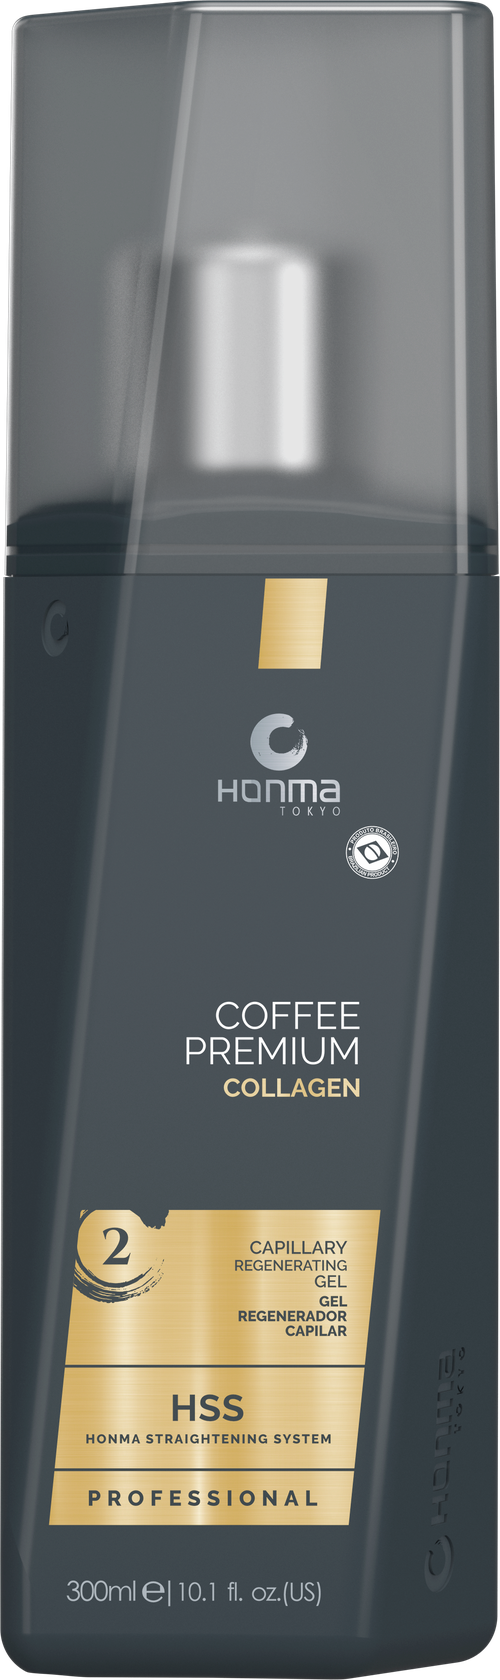 Кератиновое выпрямление гель для волос с коллагеном профессиональный 2 ШАГ Honma Tokyo Coffee Premium Collagen Capillary Regenerating Gel 300 мл